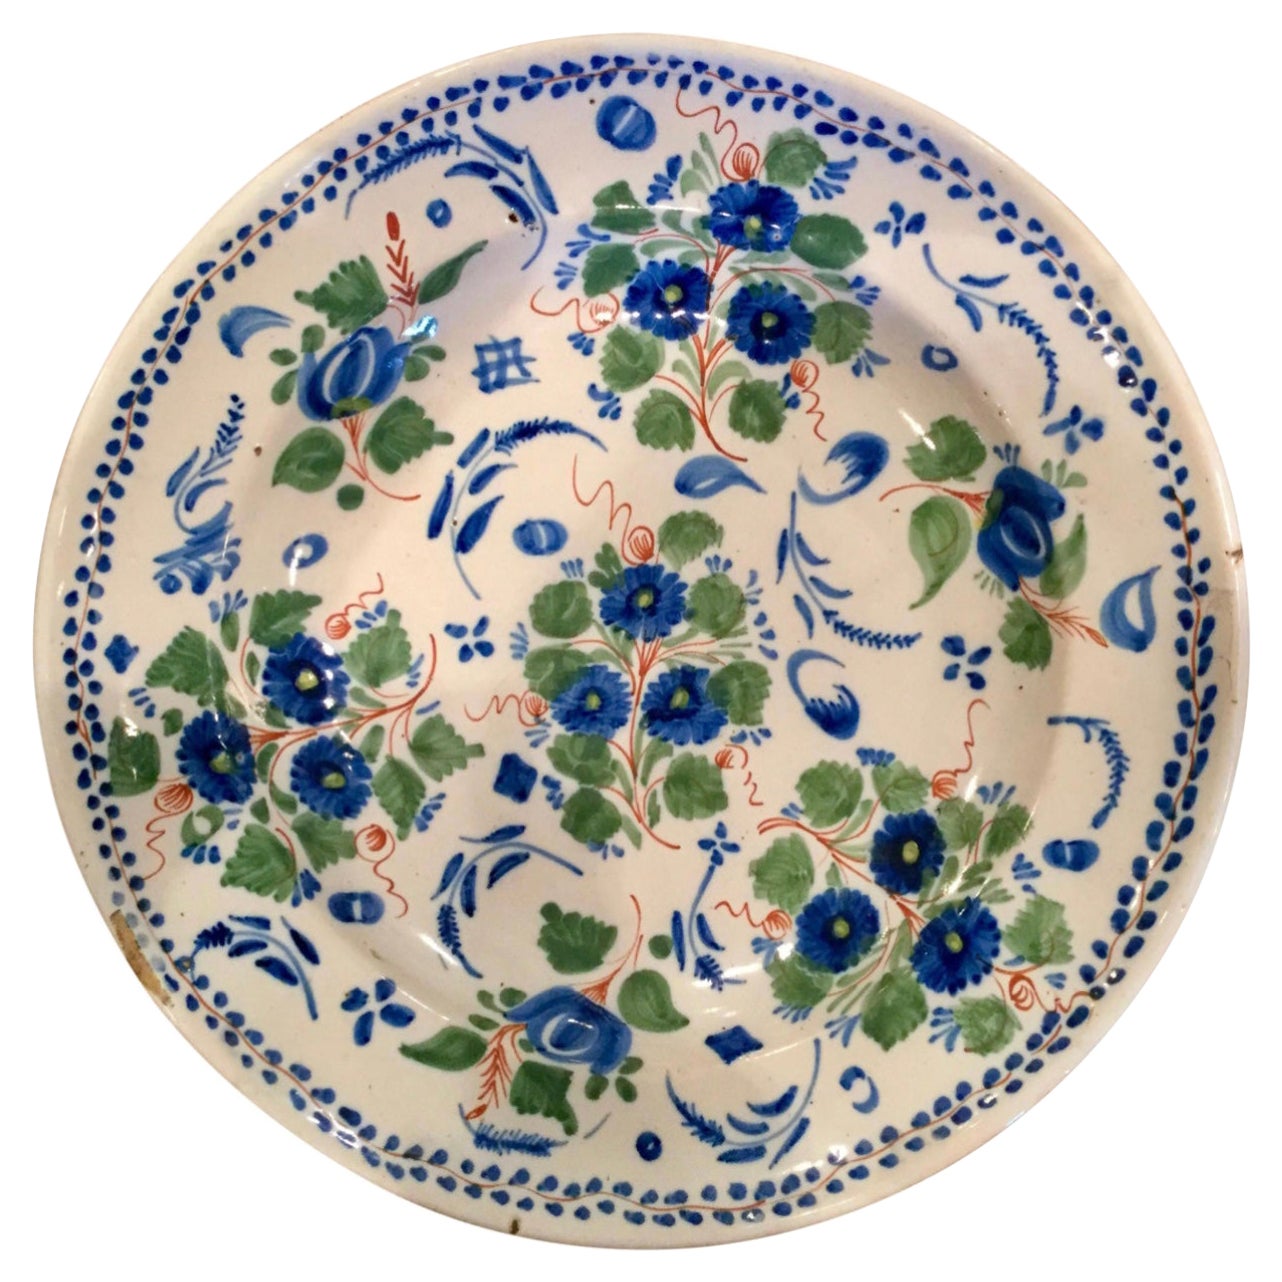 Spanisches Delfter Teller aus dem 18. Jahrhundert